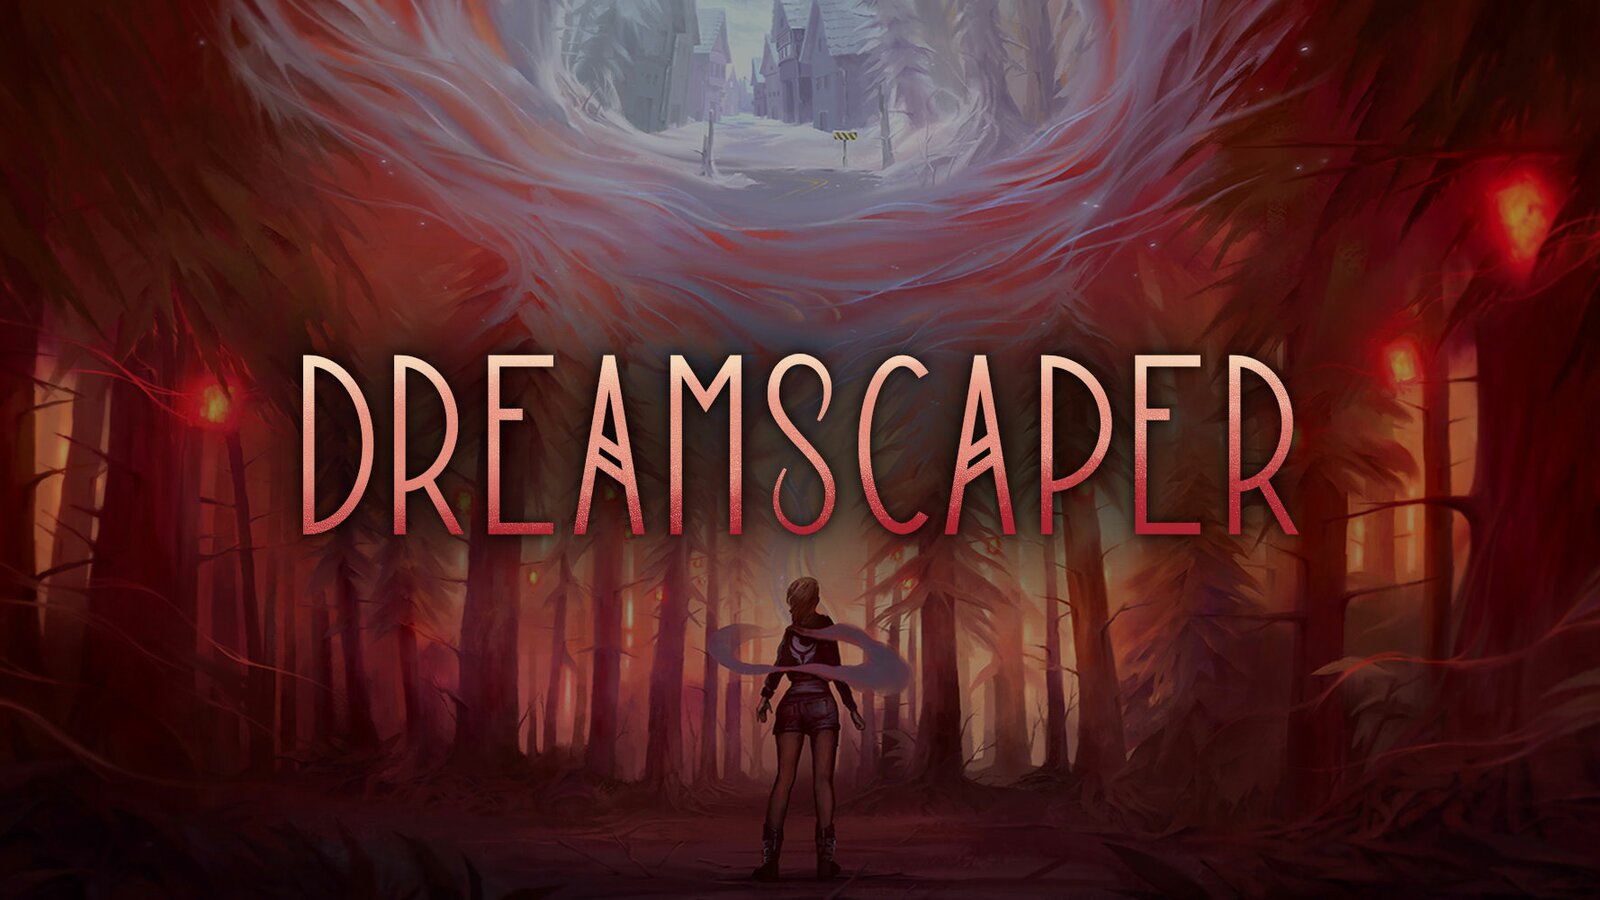 Dreamscaper